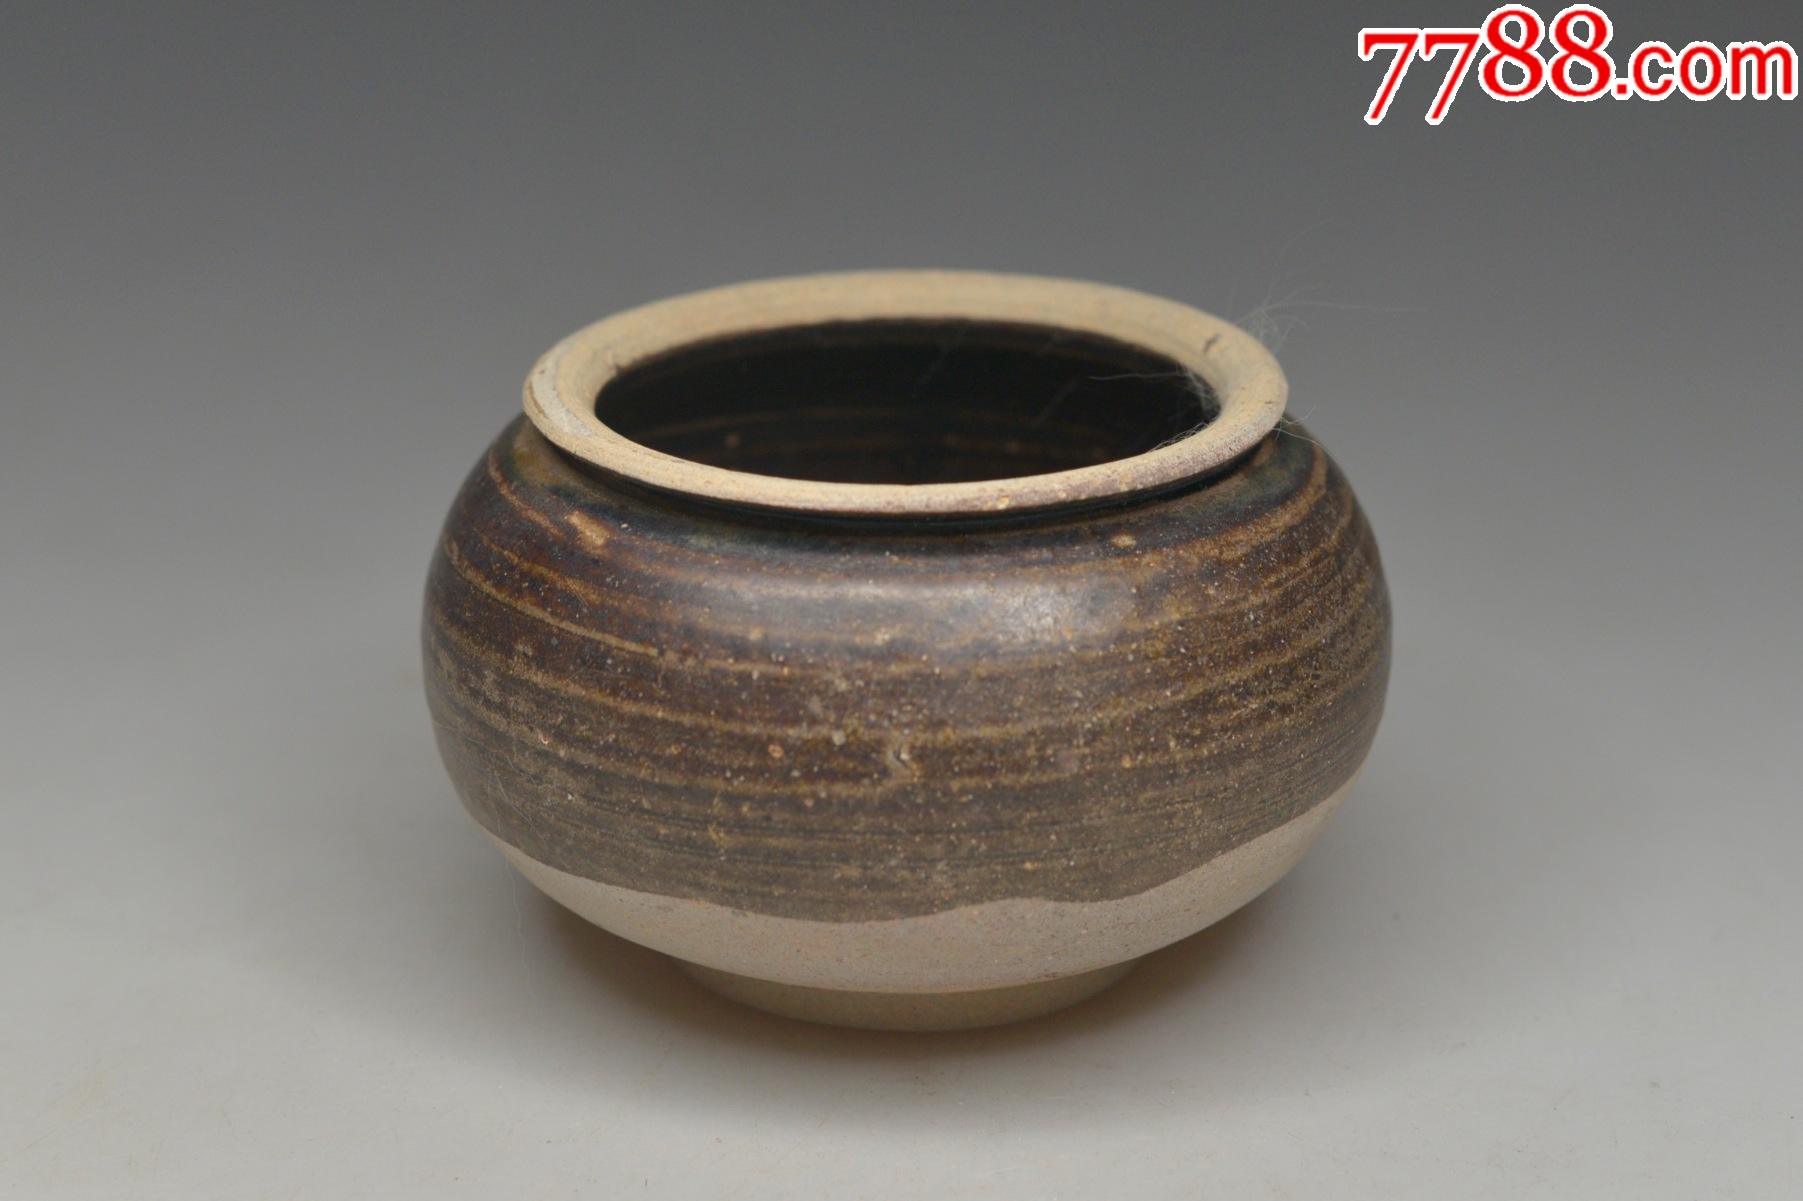 黑陶罐老罐子陶瓷罐陶器瓷器旧货收藏茶道具_价格850元_第1张_7788